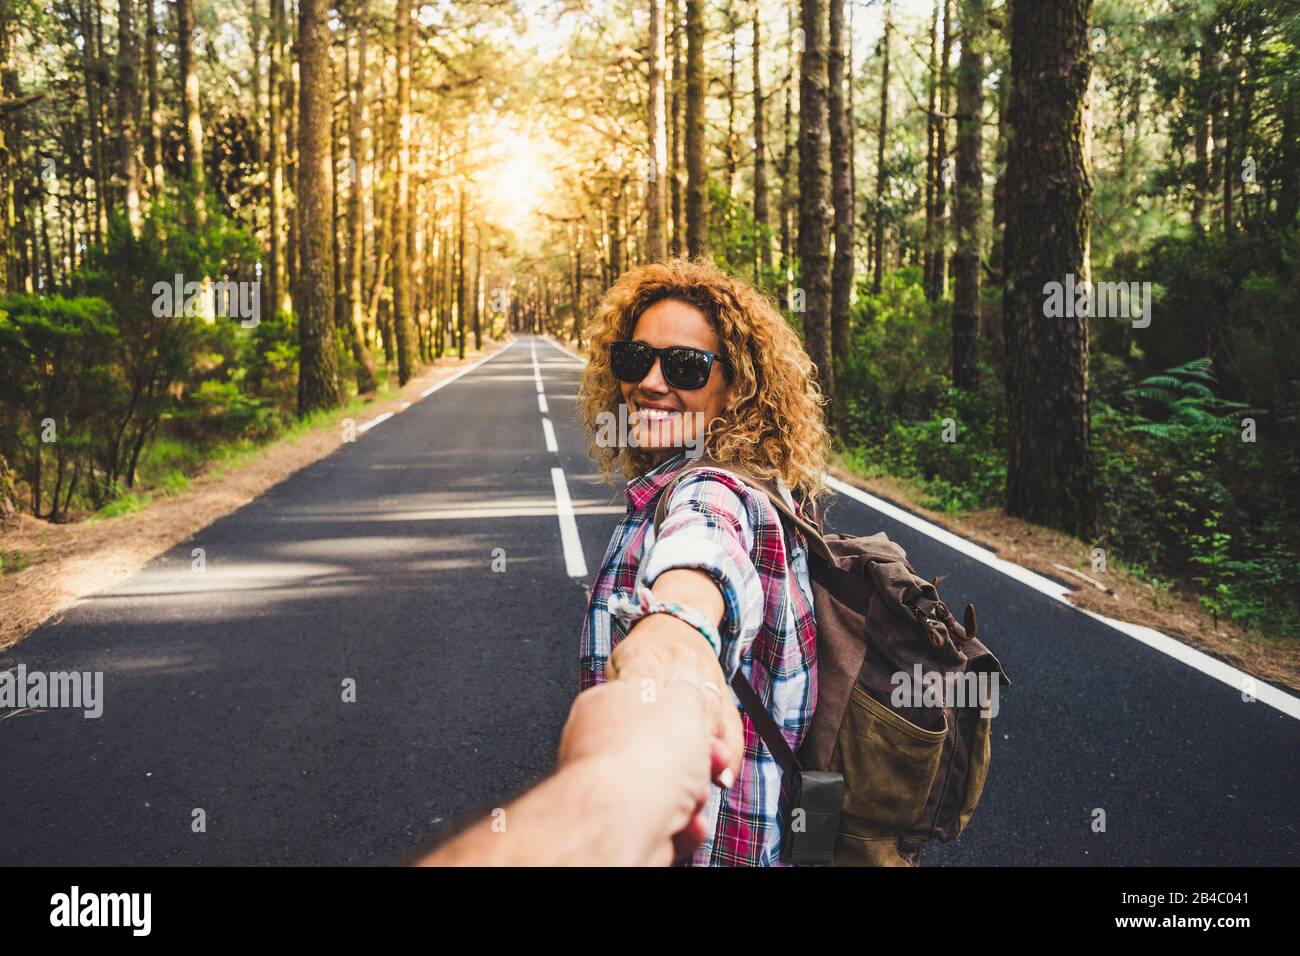 Paare Reisende Mann und Frau folgen dem halten der Hände auf der langen Straße Waldlandschaft und Sonne auf Hintergrund Liebe und Reisen glückliche Emotionen Lifestyle-Konzept. Menschen, die aktive Abenteuerferien reisen Stockfoto